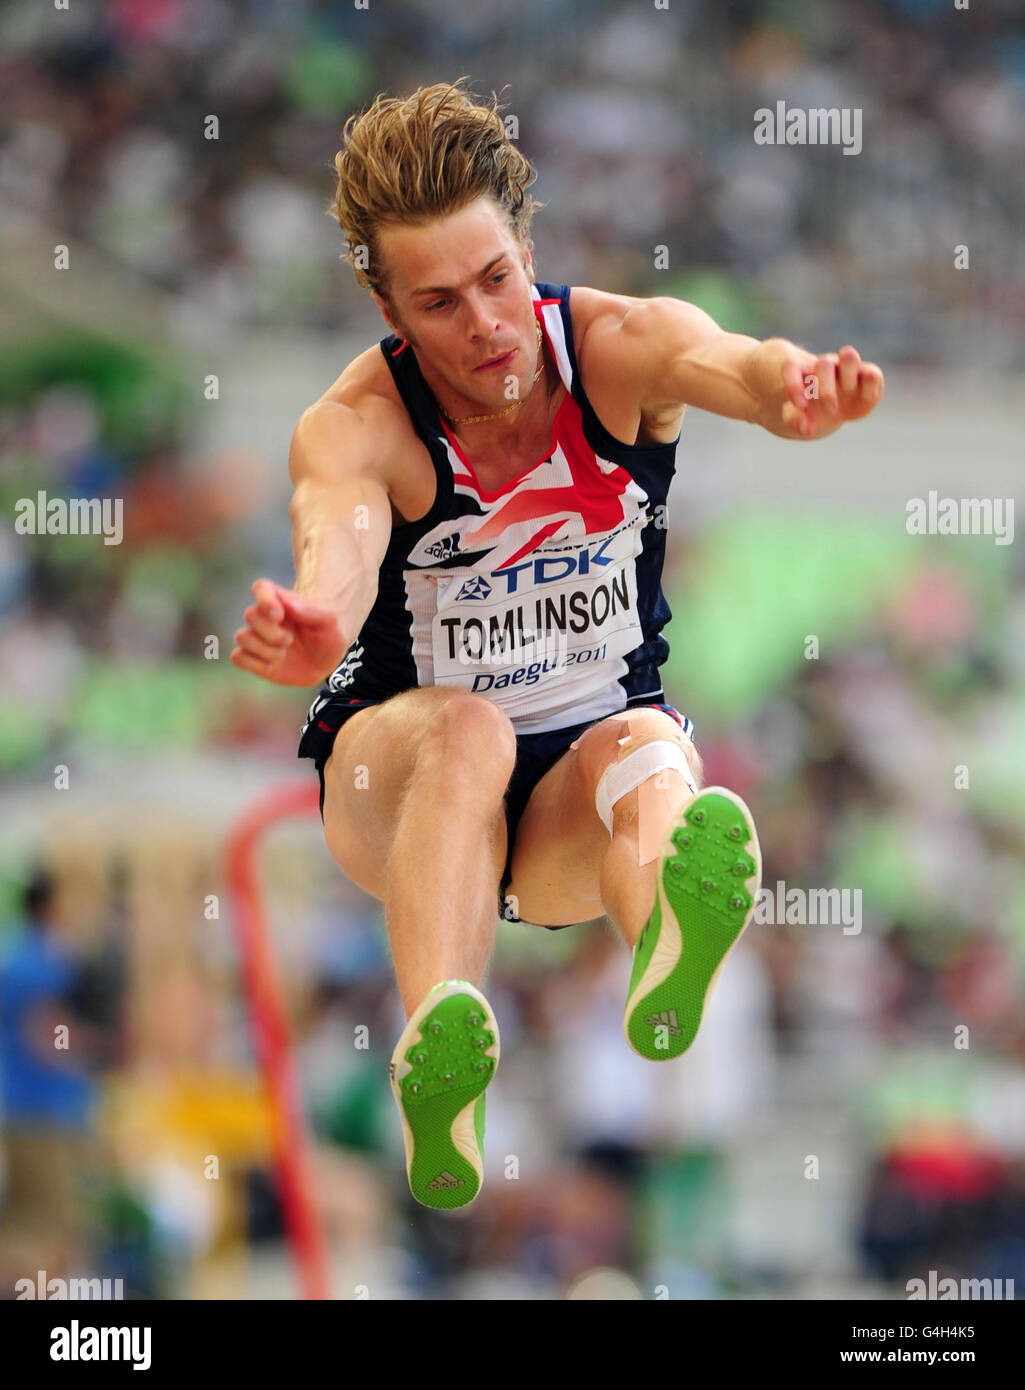 Der britische Chris Tomlinson qualifiziert sich am sechsten Tag der IAAF-Leichtathletik-Weltmeisterschaften im Daegu-Stadion in Daegu, Südkorea, für den Long Jump der Männer. Stockfoto